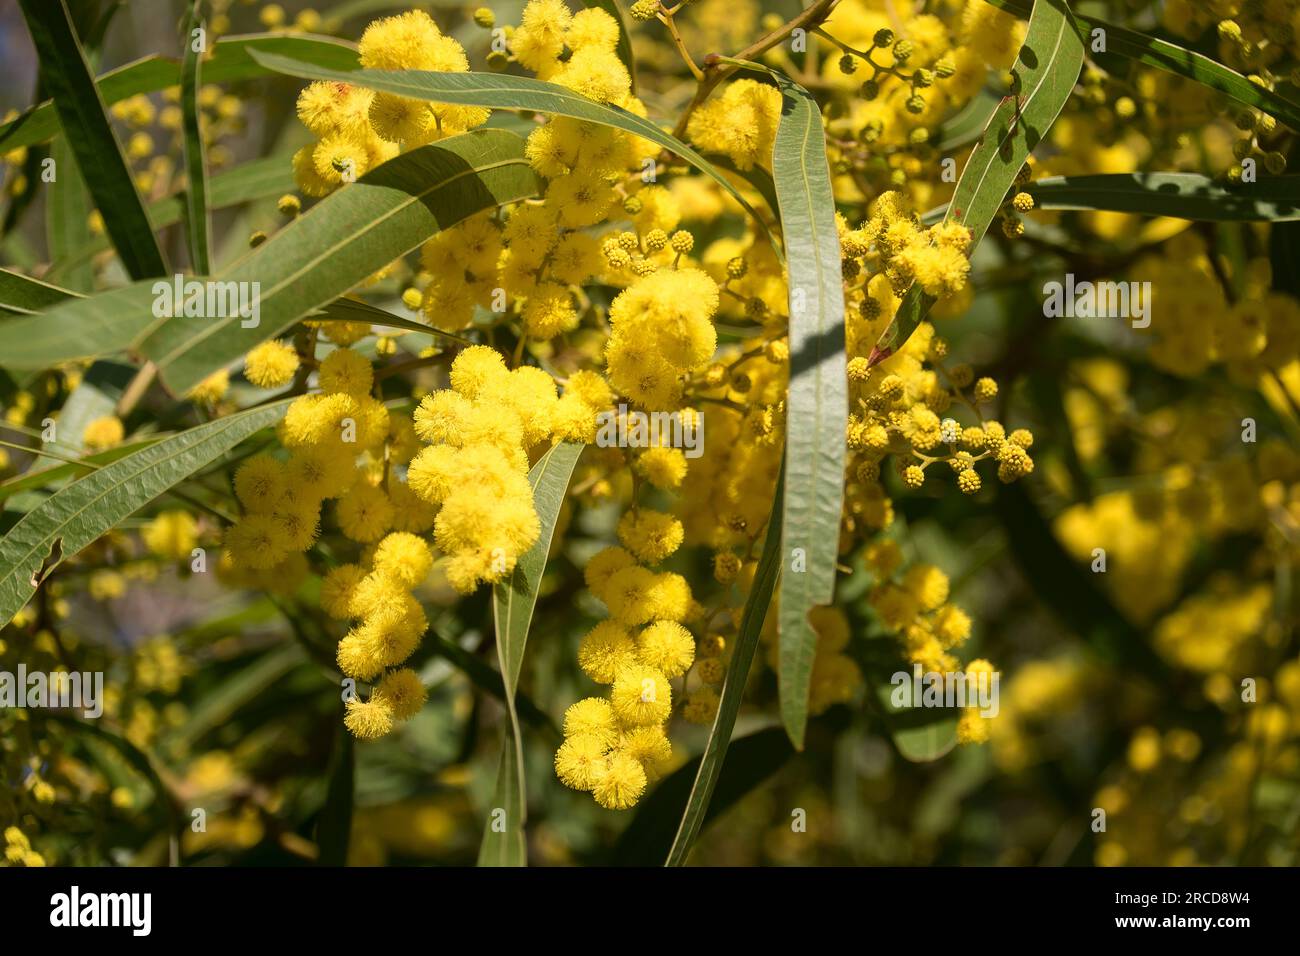 Nahaufnahme von australischer einheimischer Acacia macradenia, Zickzack-Wappern. Hunderte von hellgelben, duftenden, kugeligen Blumen. Queensland Garden im Winter. Stockfoto